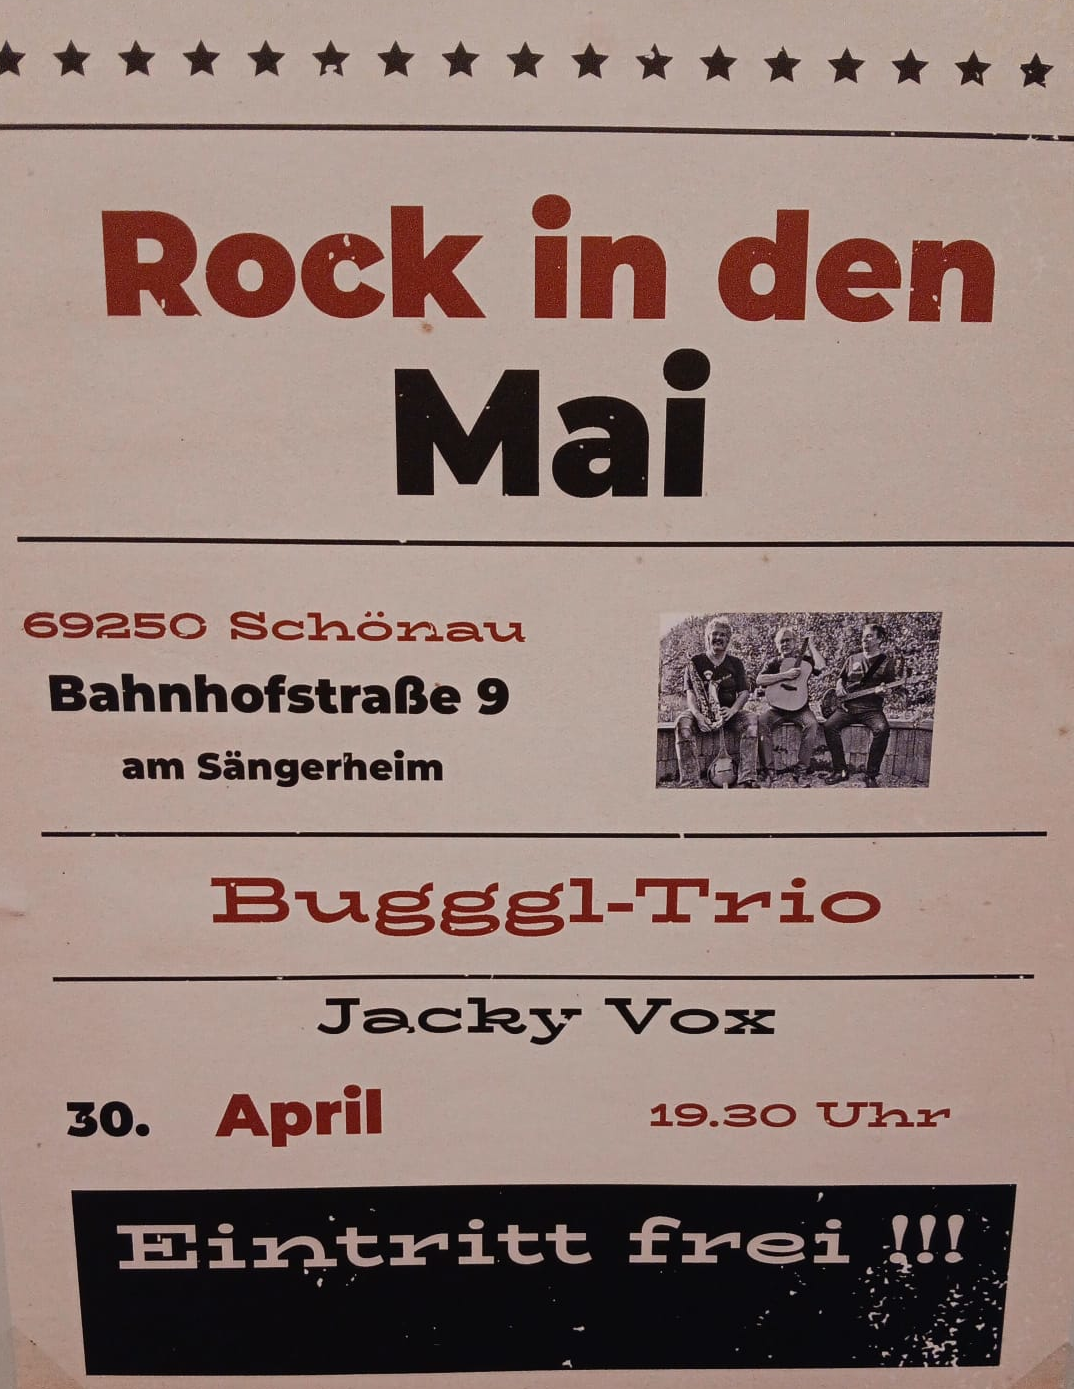 Rock in den Mai Bahnhofstraße 9, 69250 Schönau mit dem Bugggl-Trio und Jacky Vox am 30. April um 19:30 Uhr, Eintritt frei!